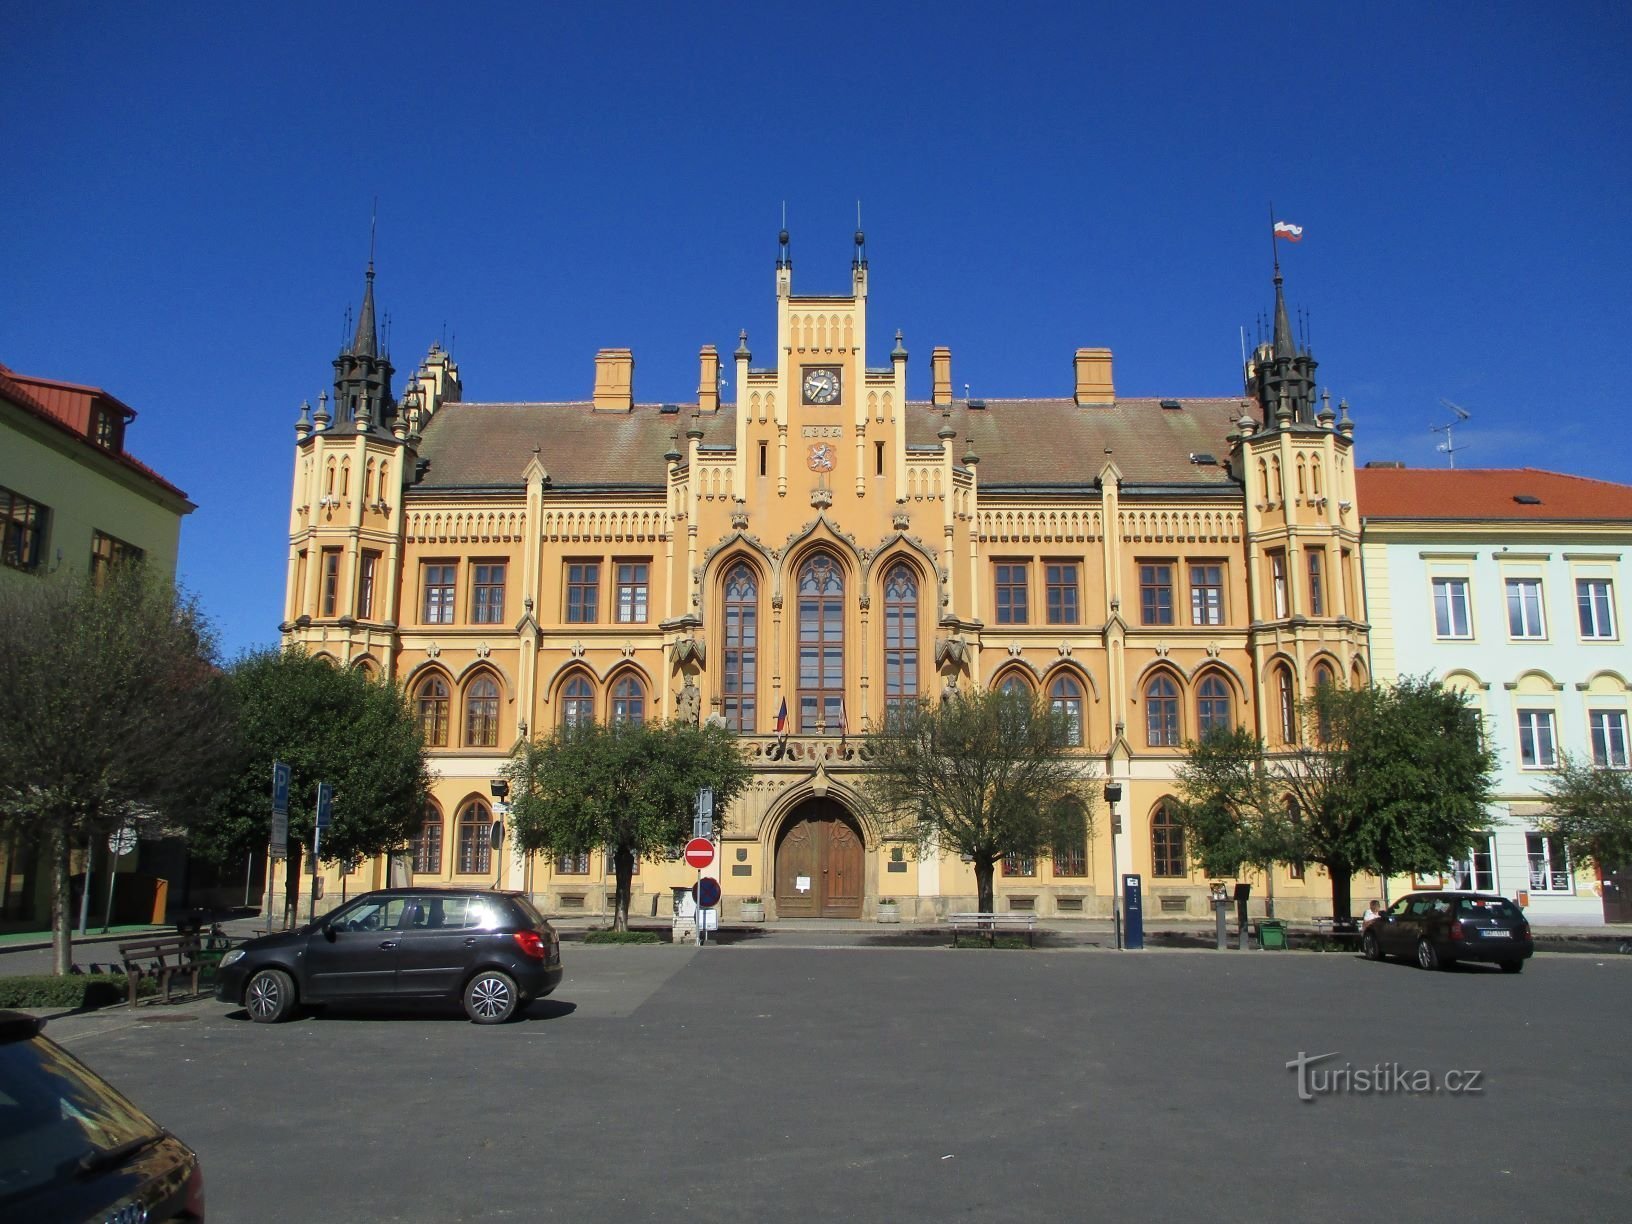 City Hall (Nový Bydžov, 5.7.2020 July XNUMX)